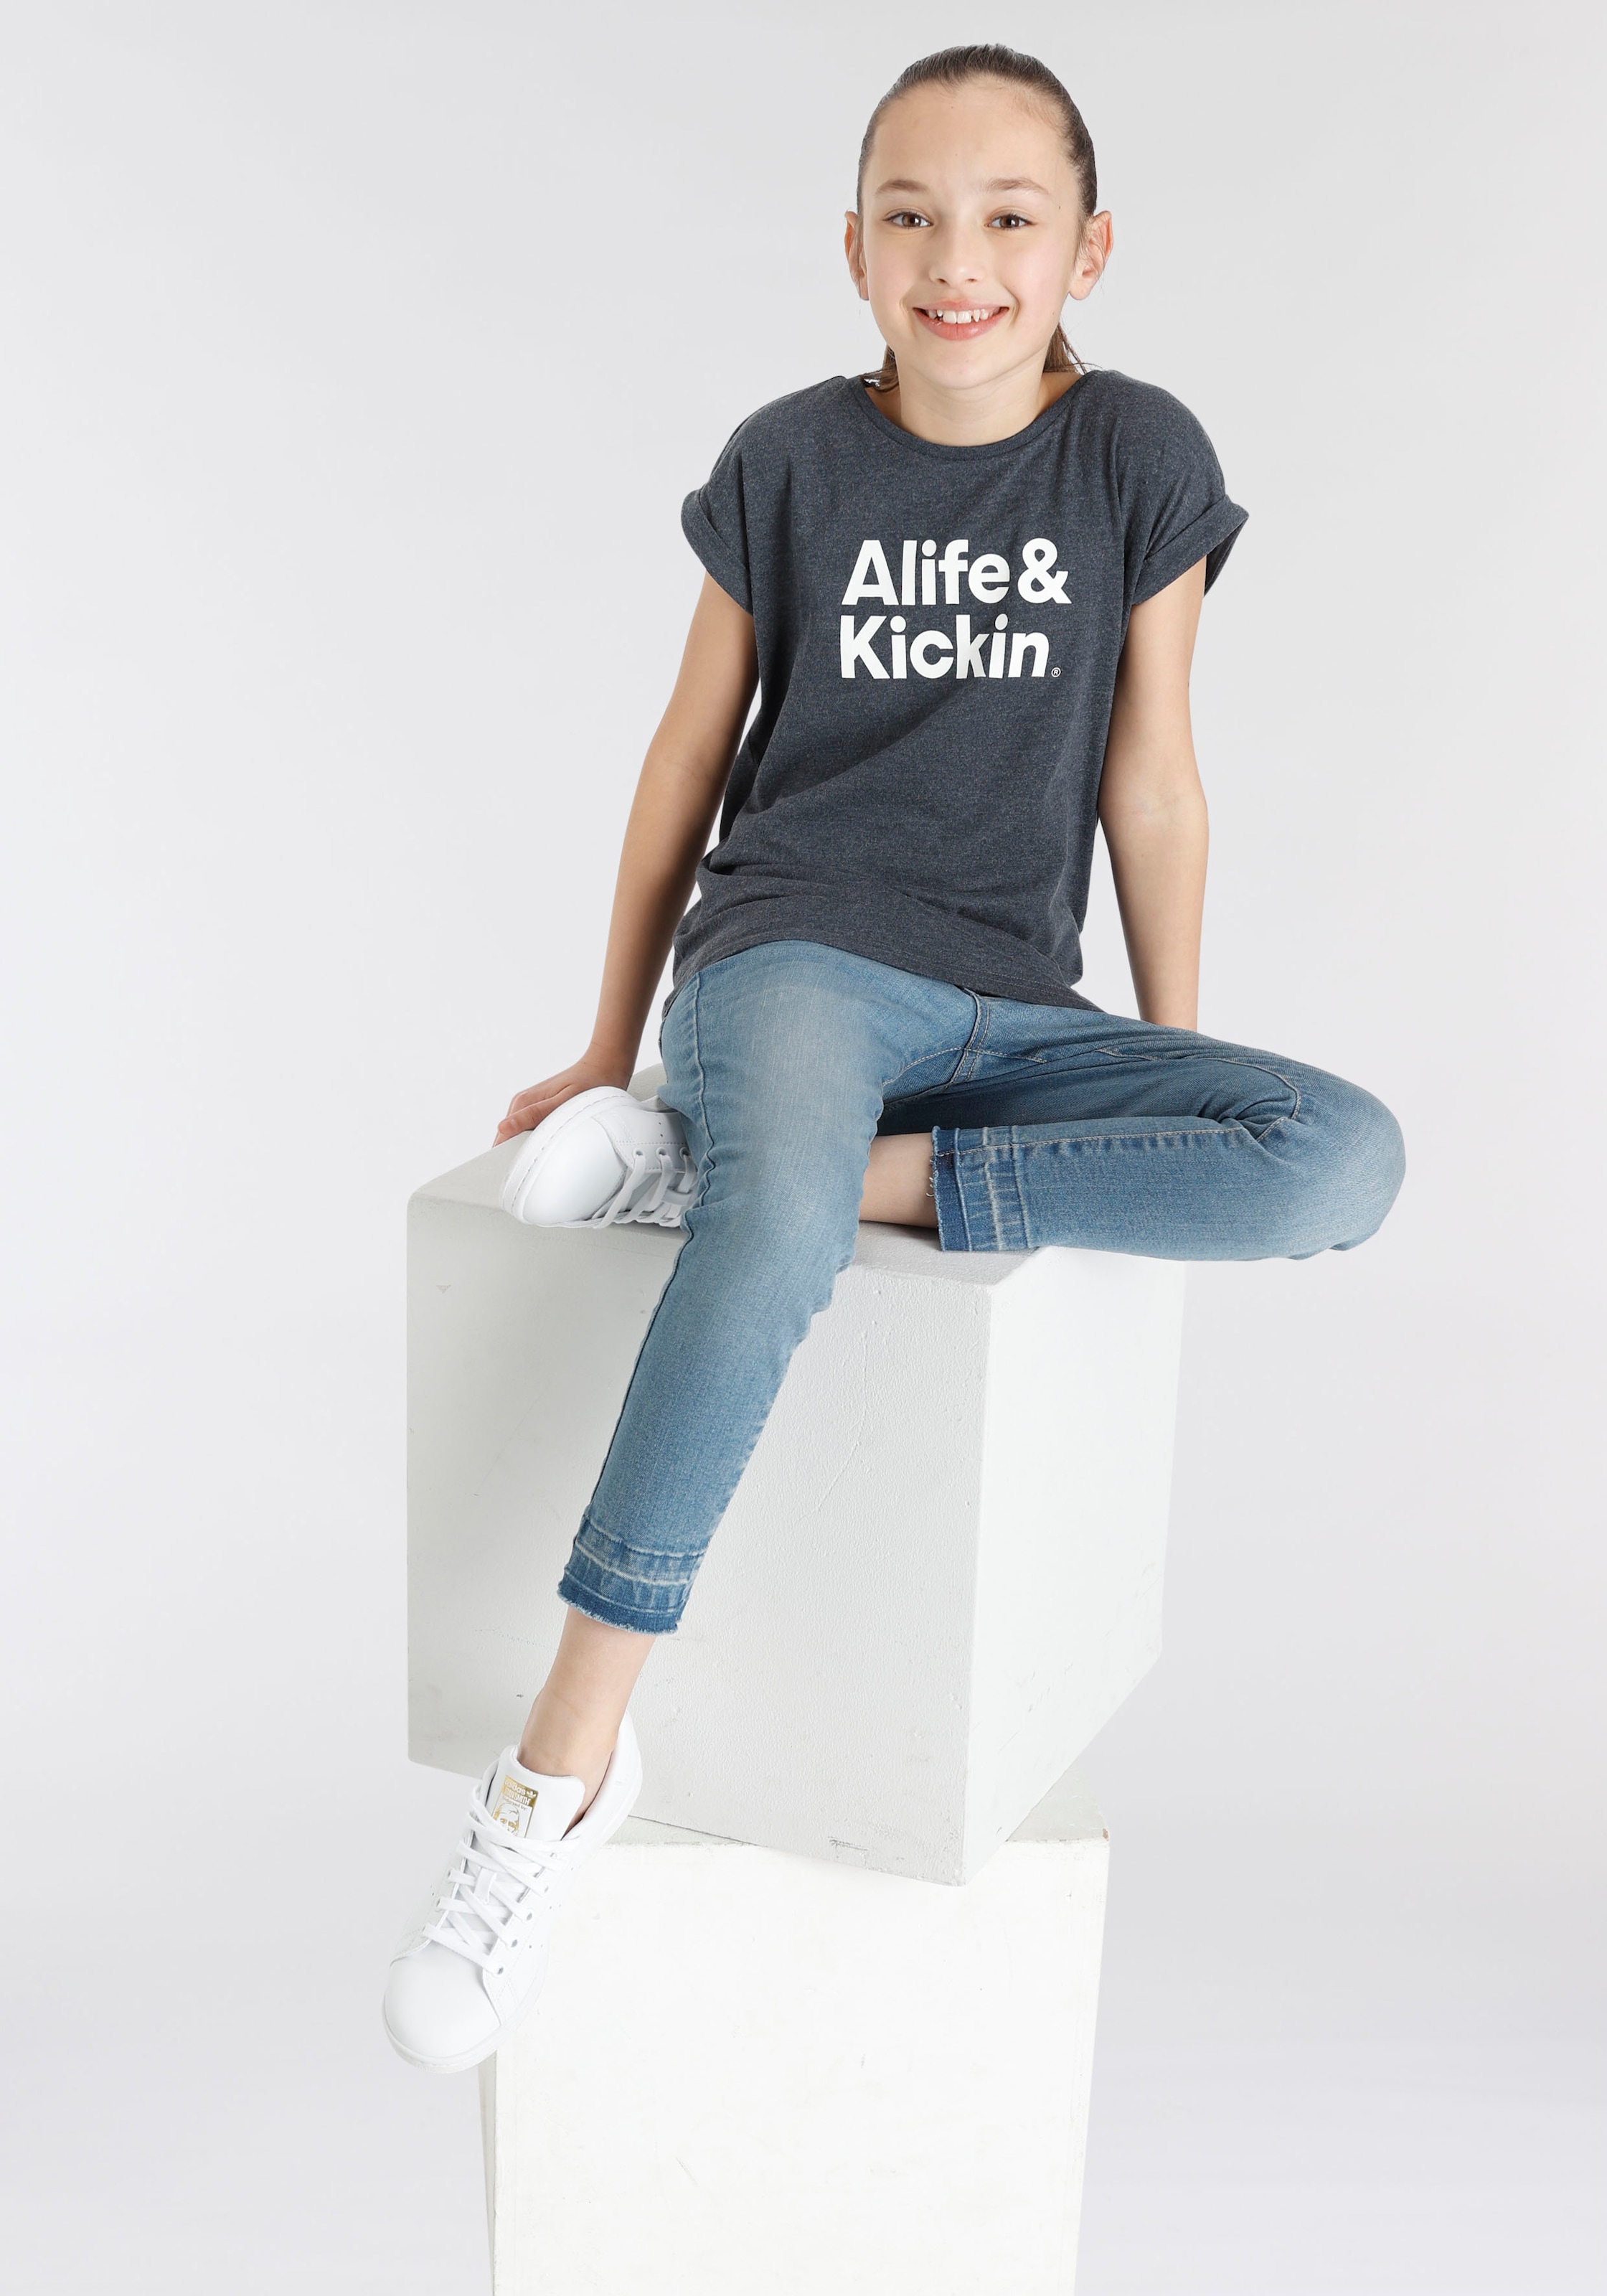 für BAUR MARKE! Logo bestellen | & Druck«, Alife & Alife NEUE T-Shirt Kickin online »mit Kickin Kids.